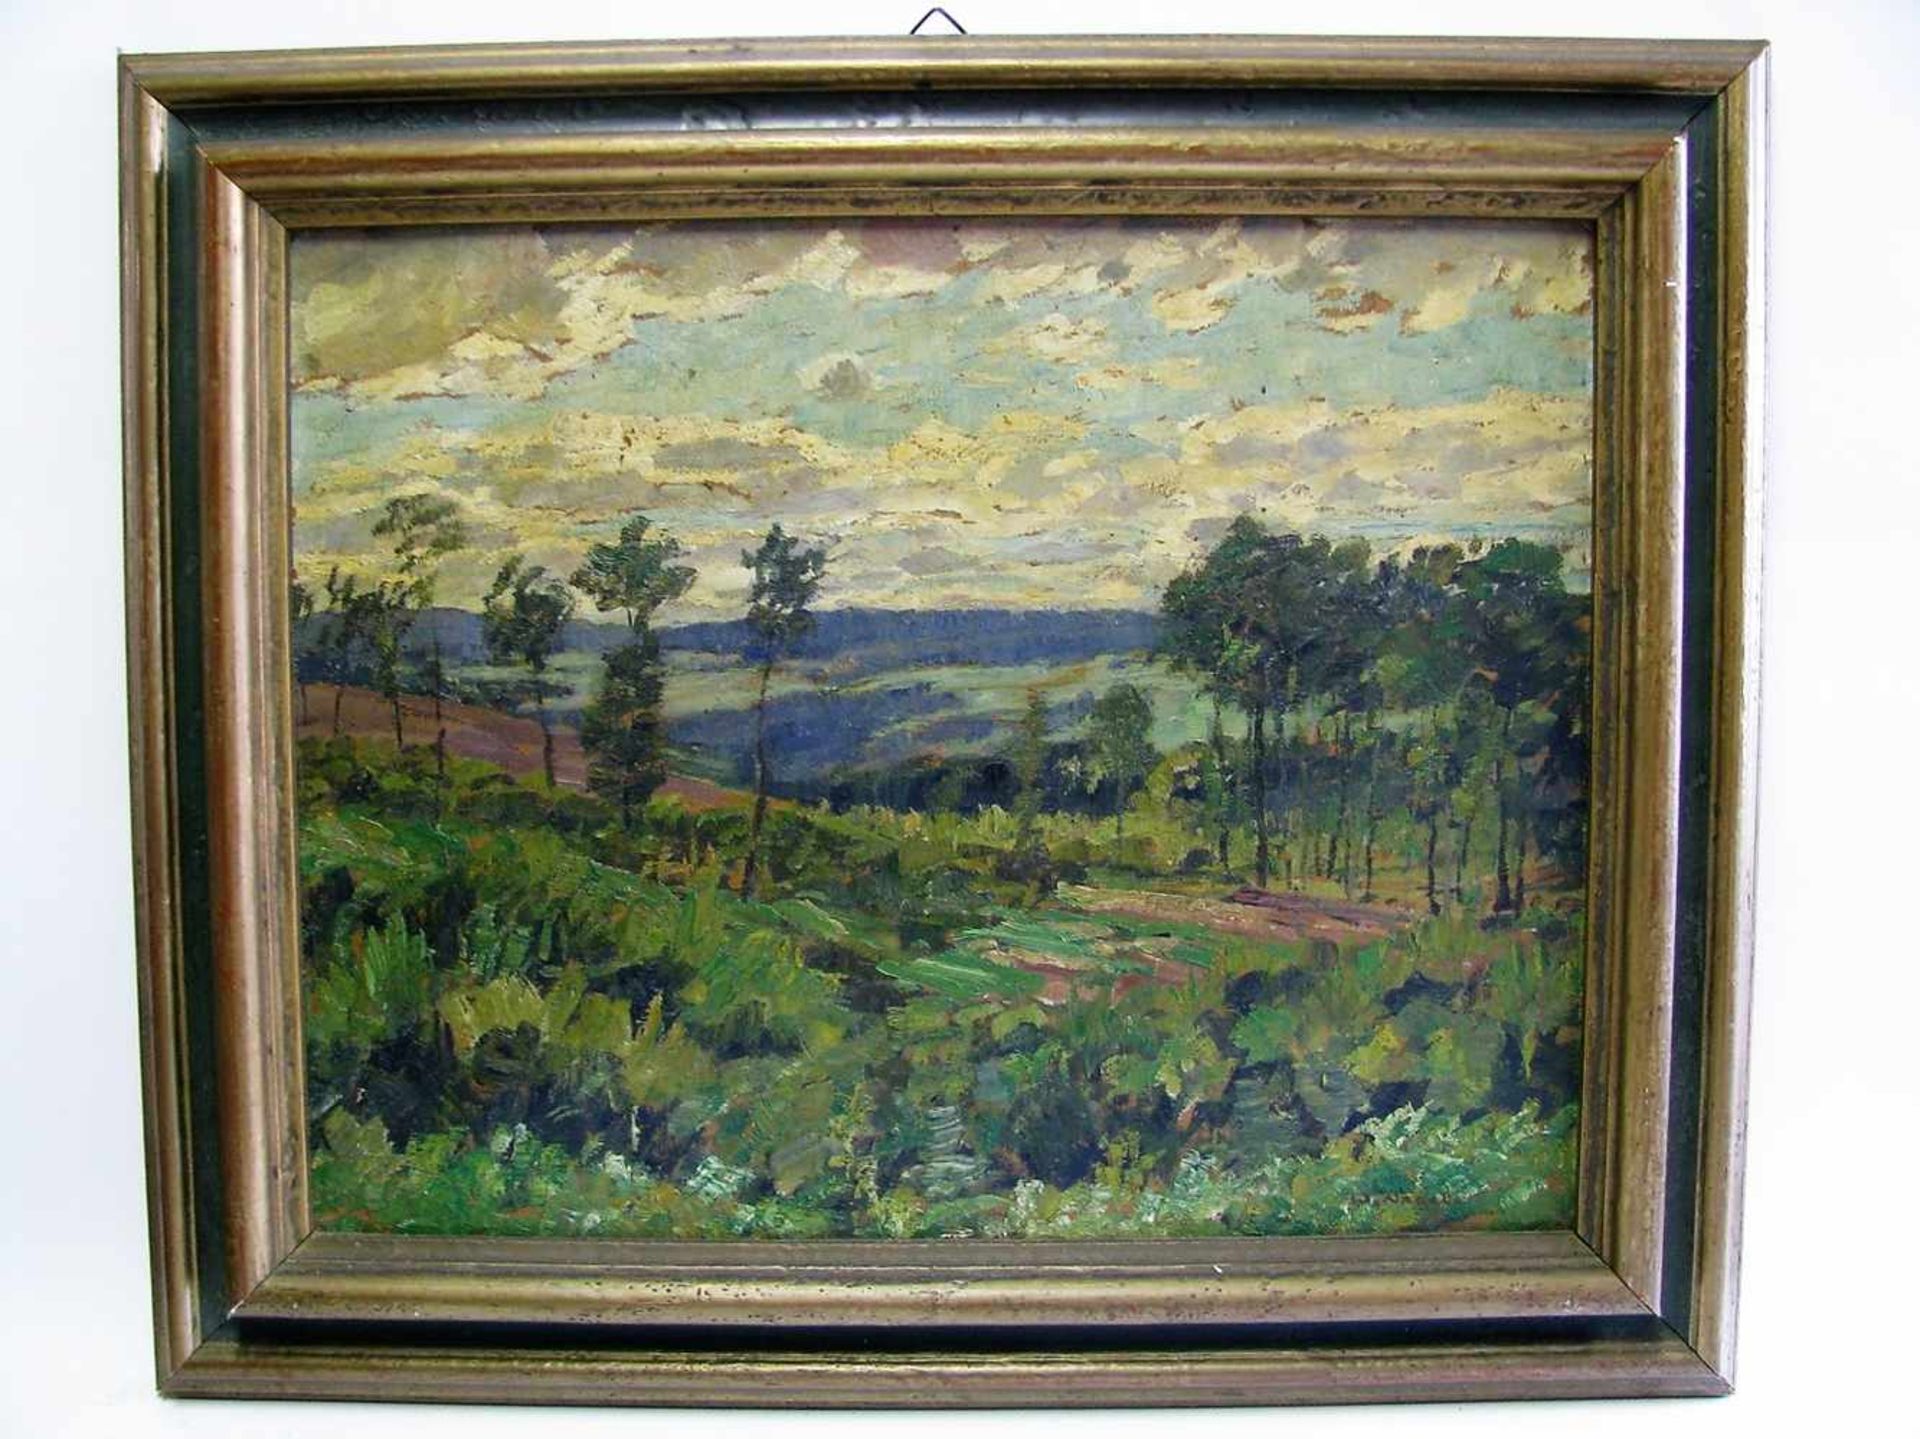 Nagel, Wilhelm, 1866 - 1945, Mannheim - Baden-Baden, "Landschaft auf der Alb", re.u.sign., Öl/